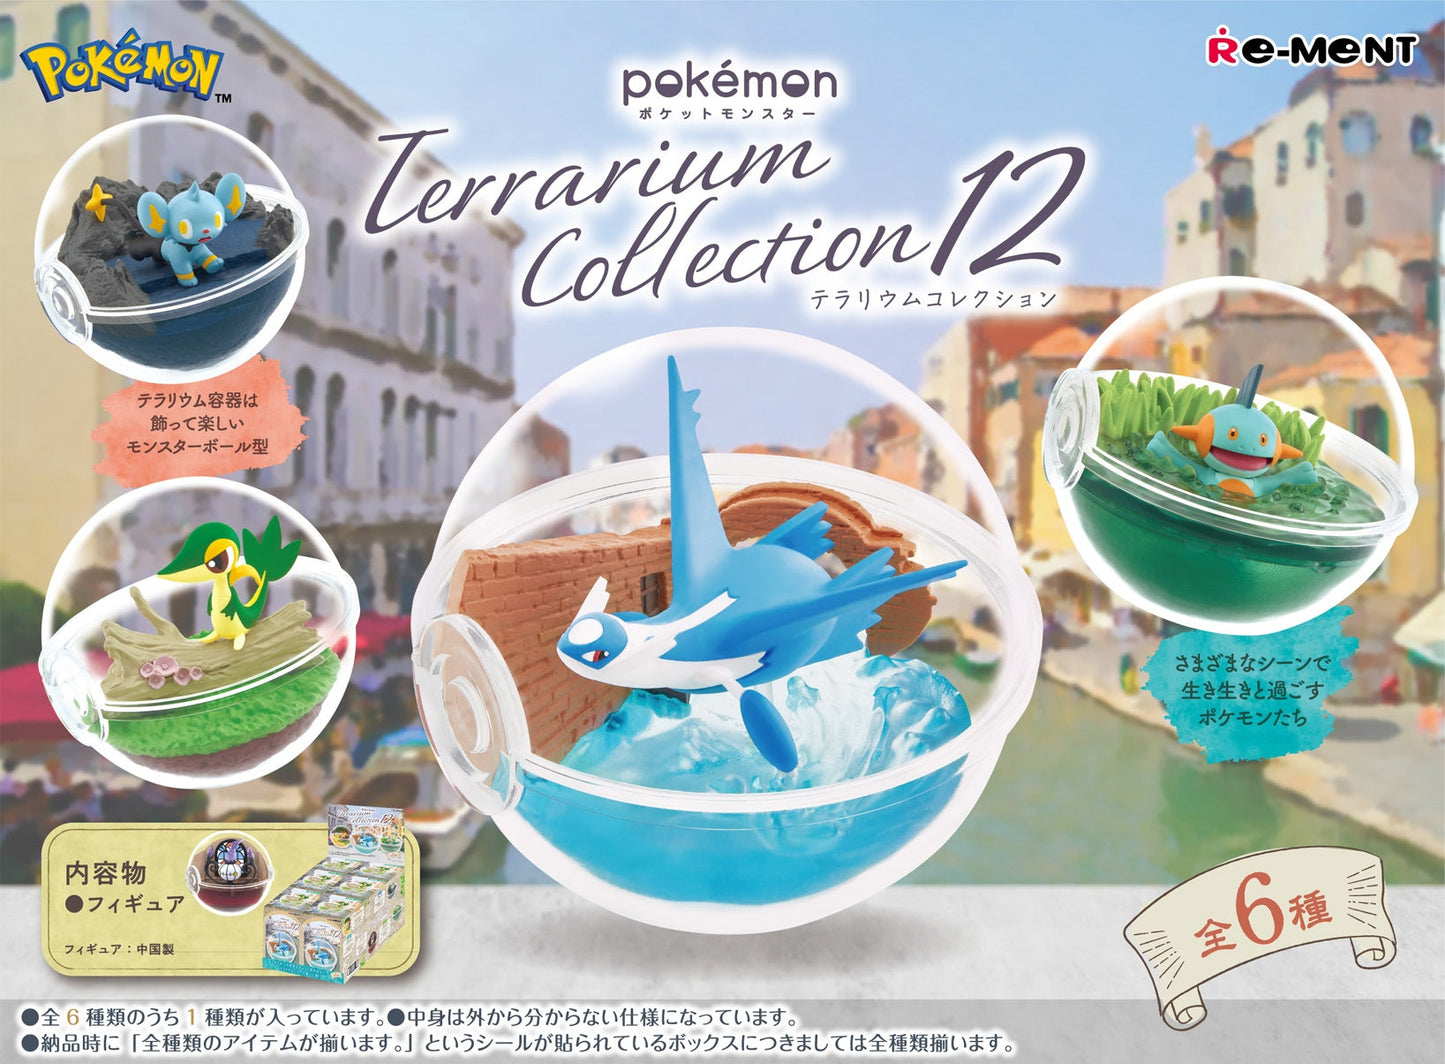 CHANDELURE - Pokemon Re-Ment Terrarium Collection 12 (NEW) Figure #4